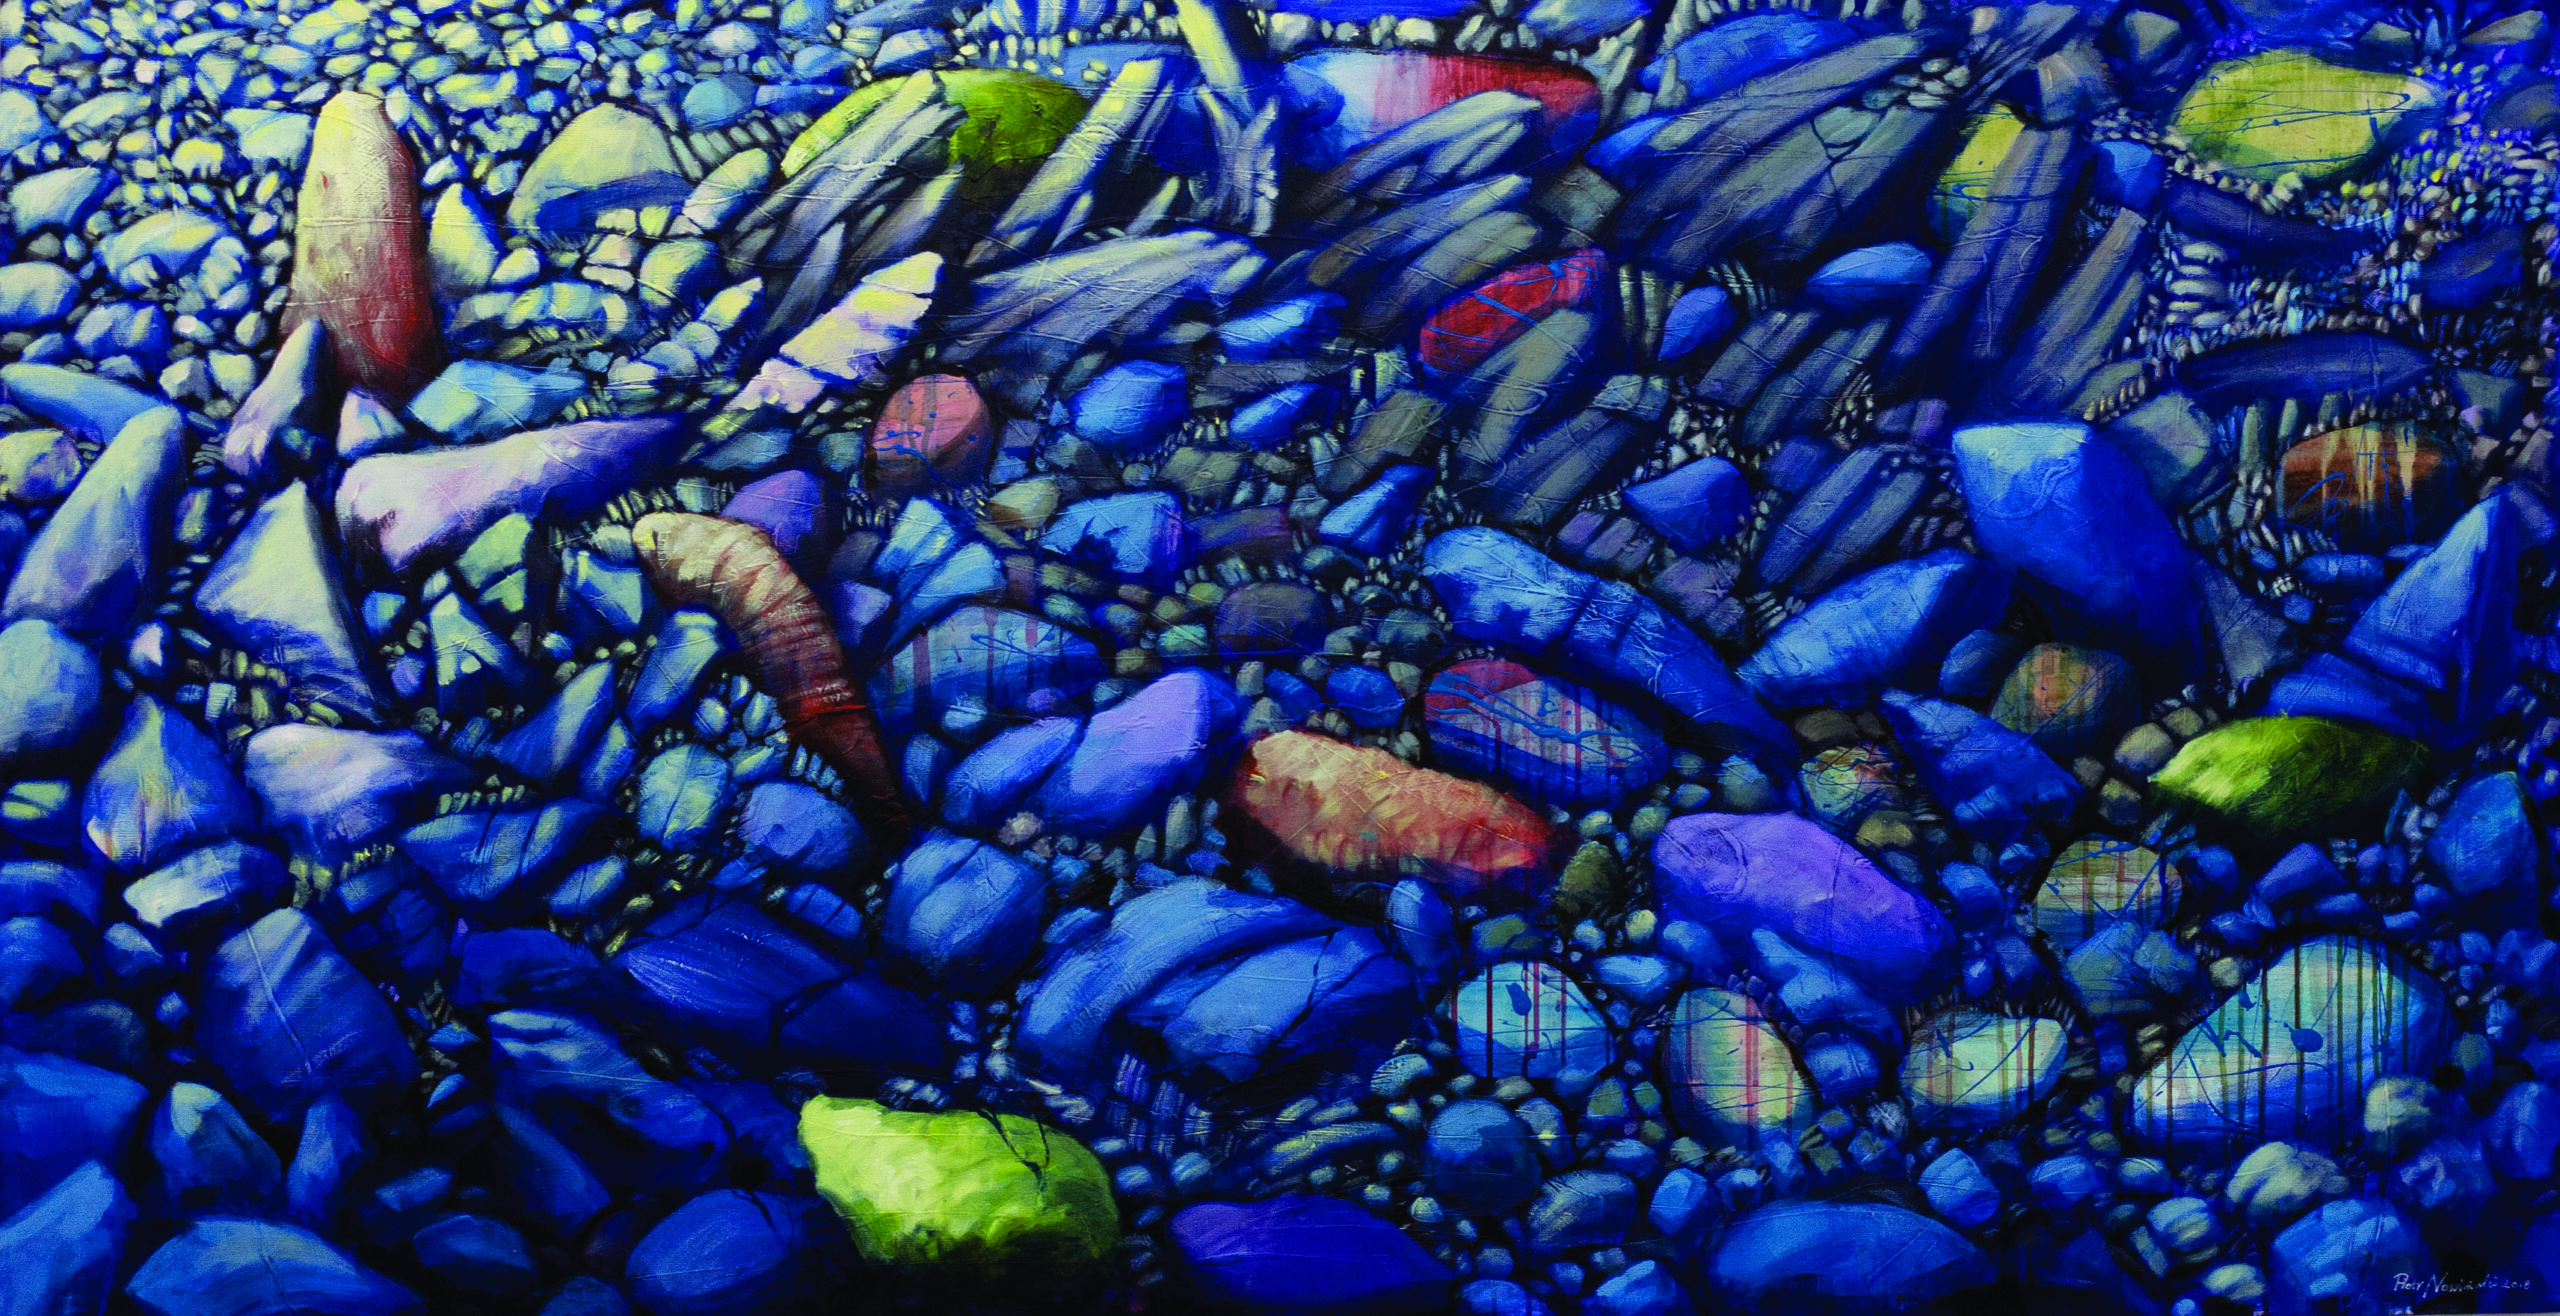 Reprodukcja obrazu Kamienia nad Dunajcem. Kamienie w dominacji koloru niebieskiego na całości obrazu.